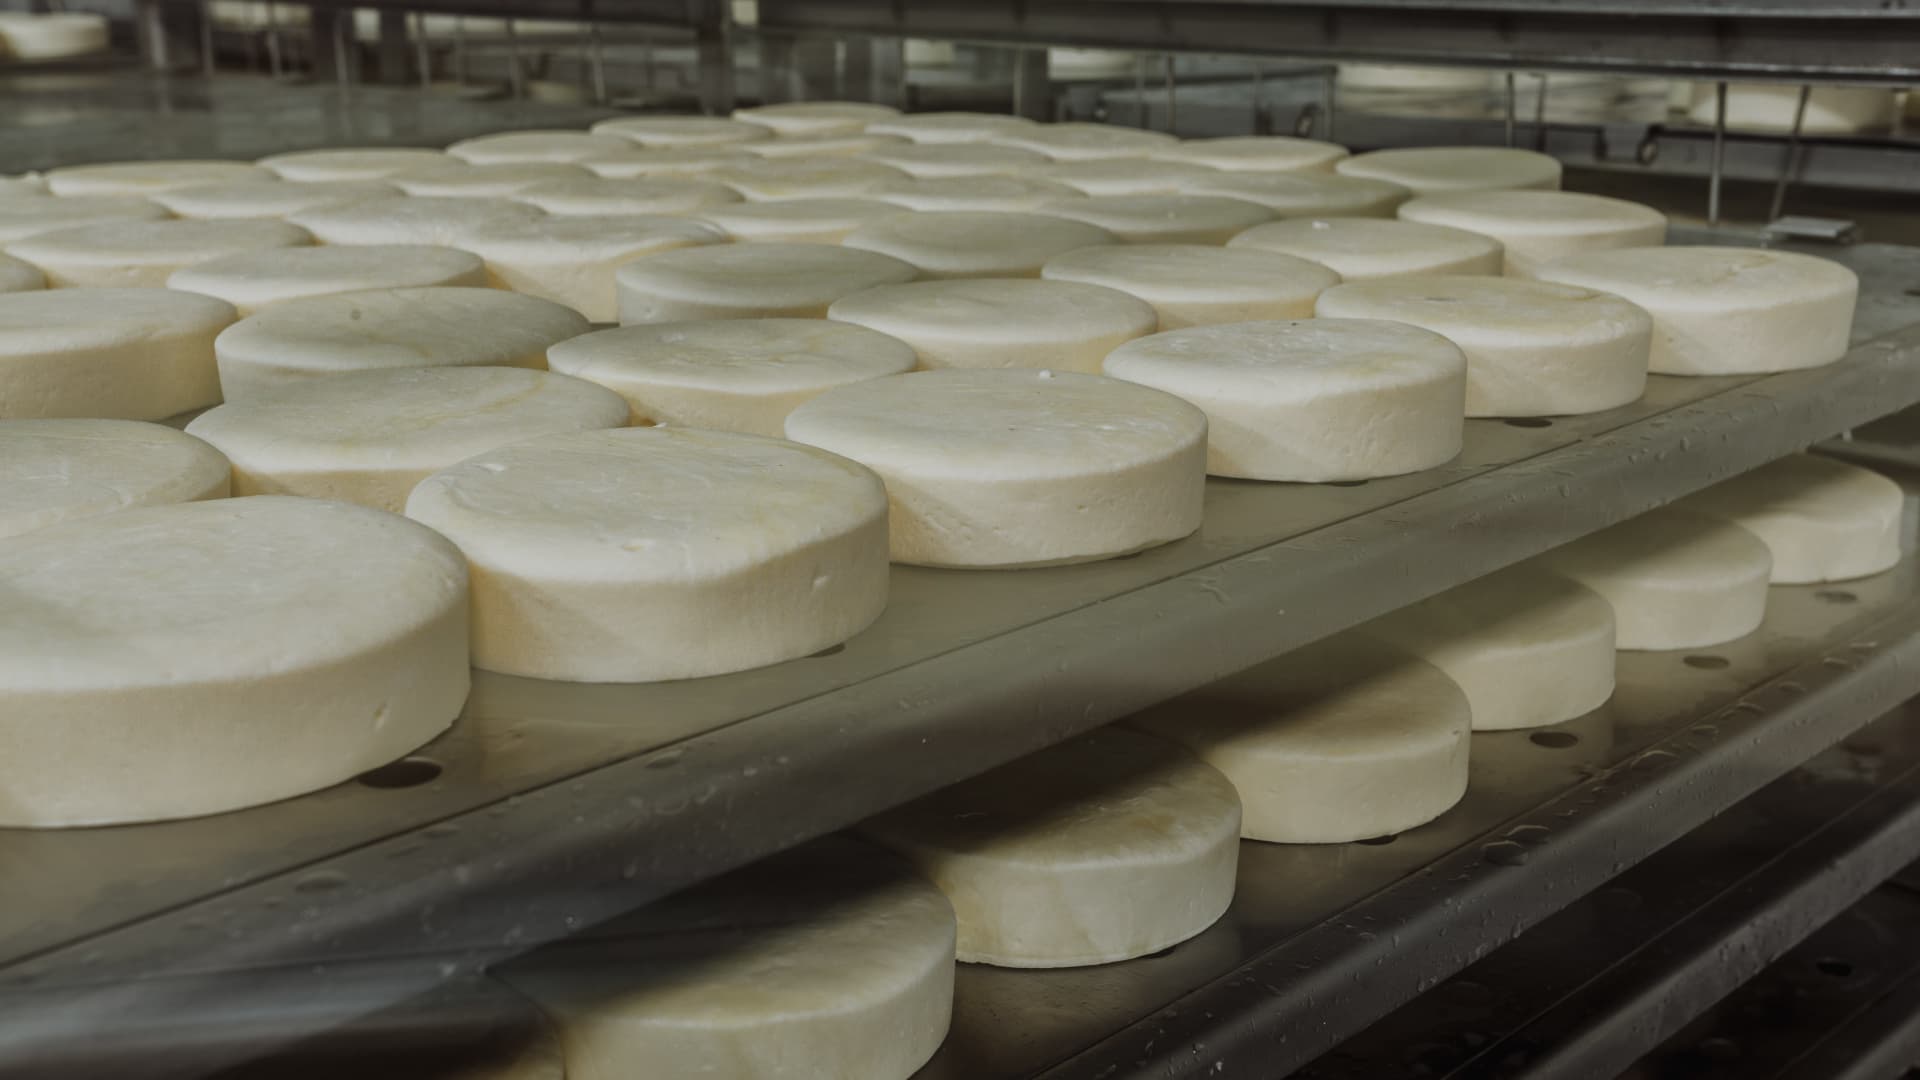 производство сыра